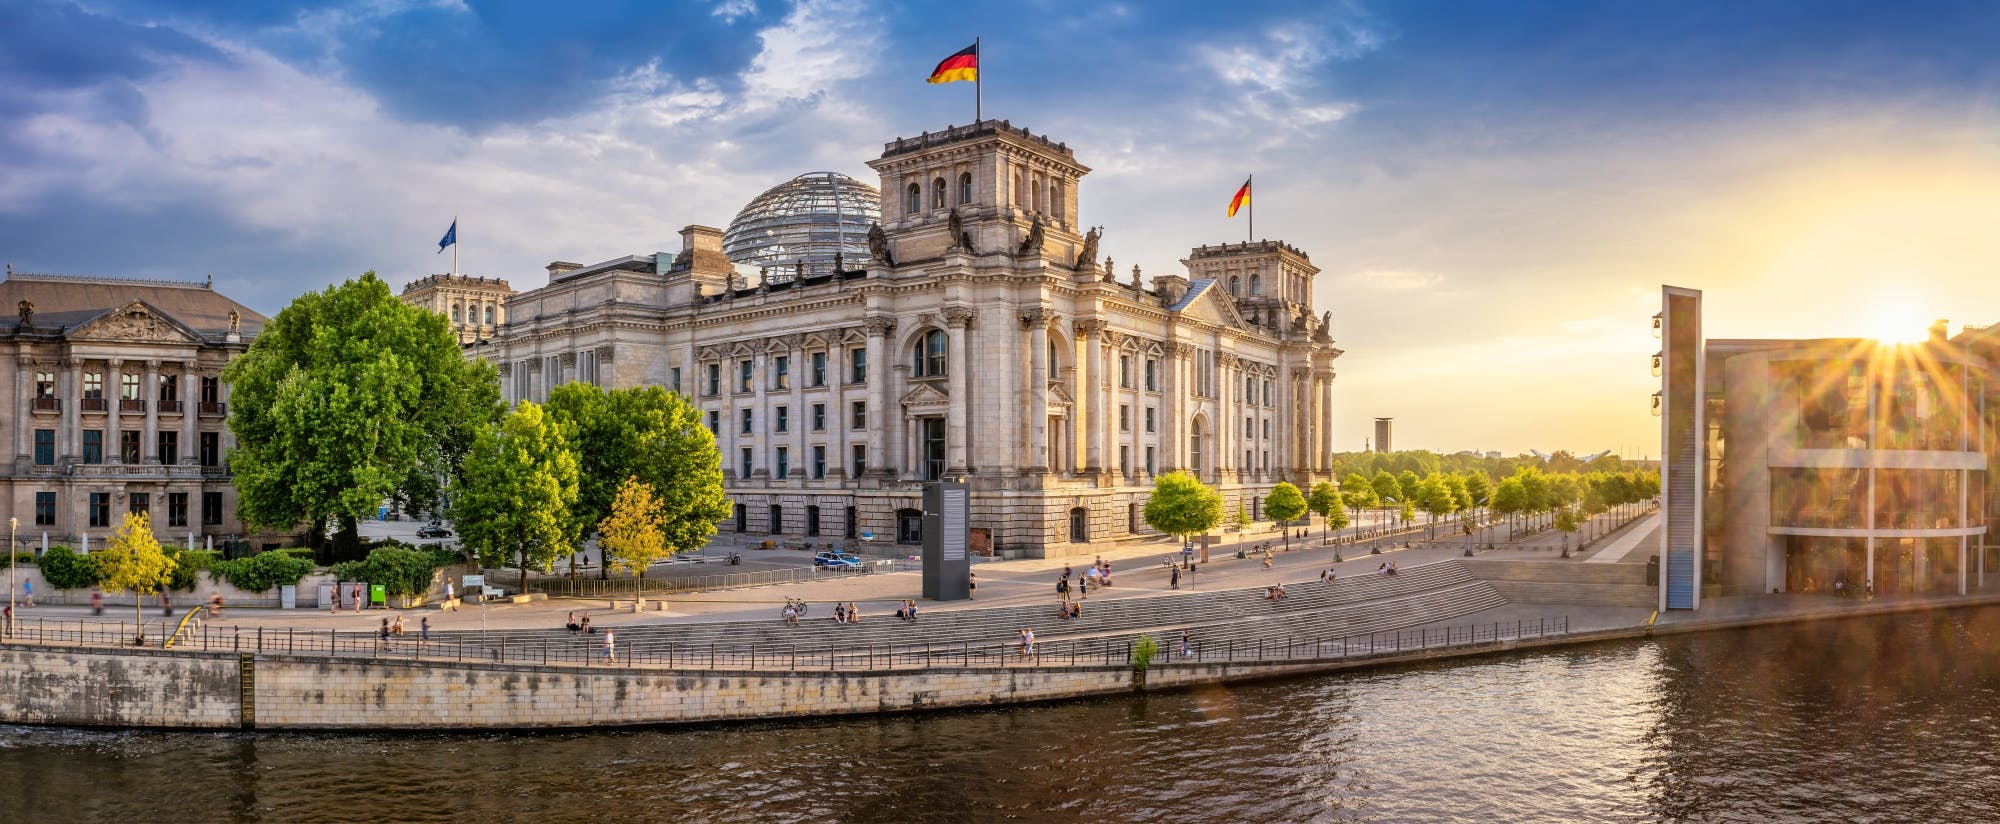 Zwiedzanie berlińskiego Reichstagu w języku angielskim ze zwiedzaniem wnętrza budynku